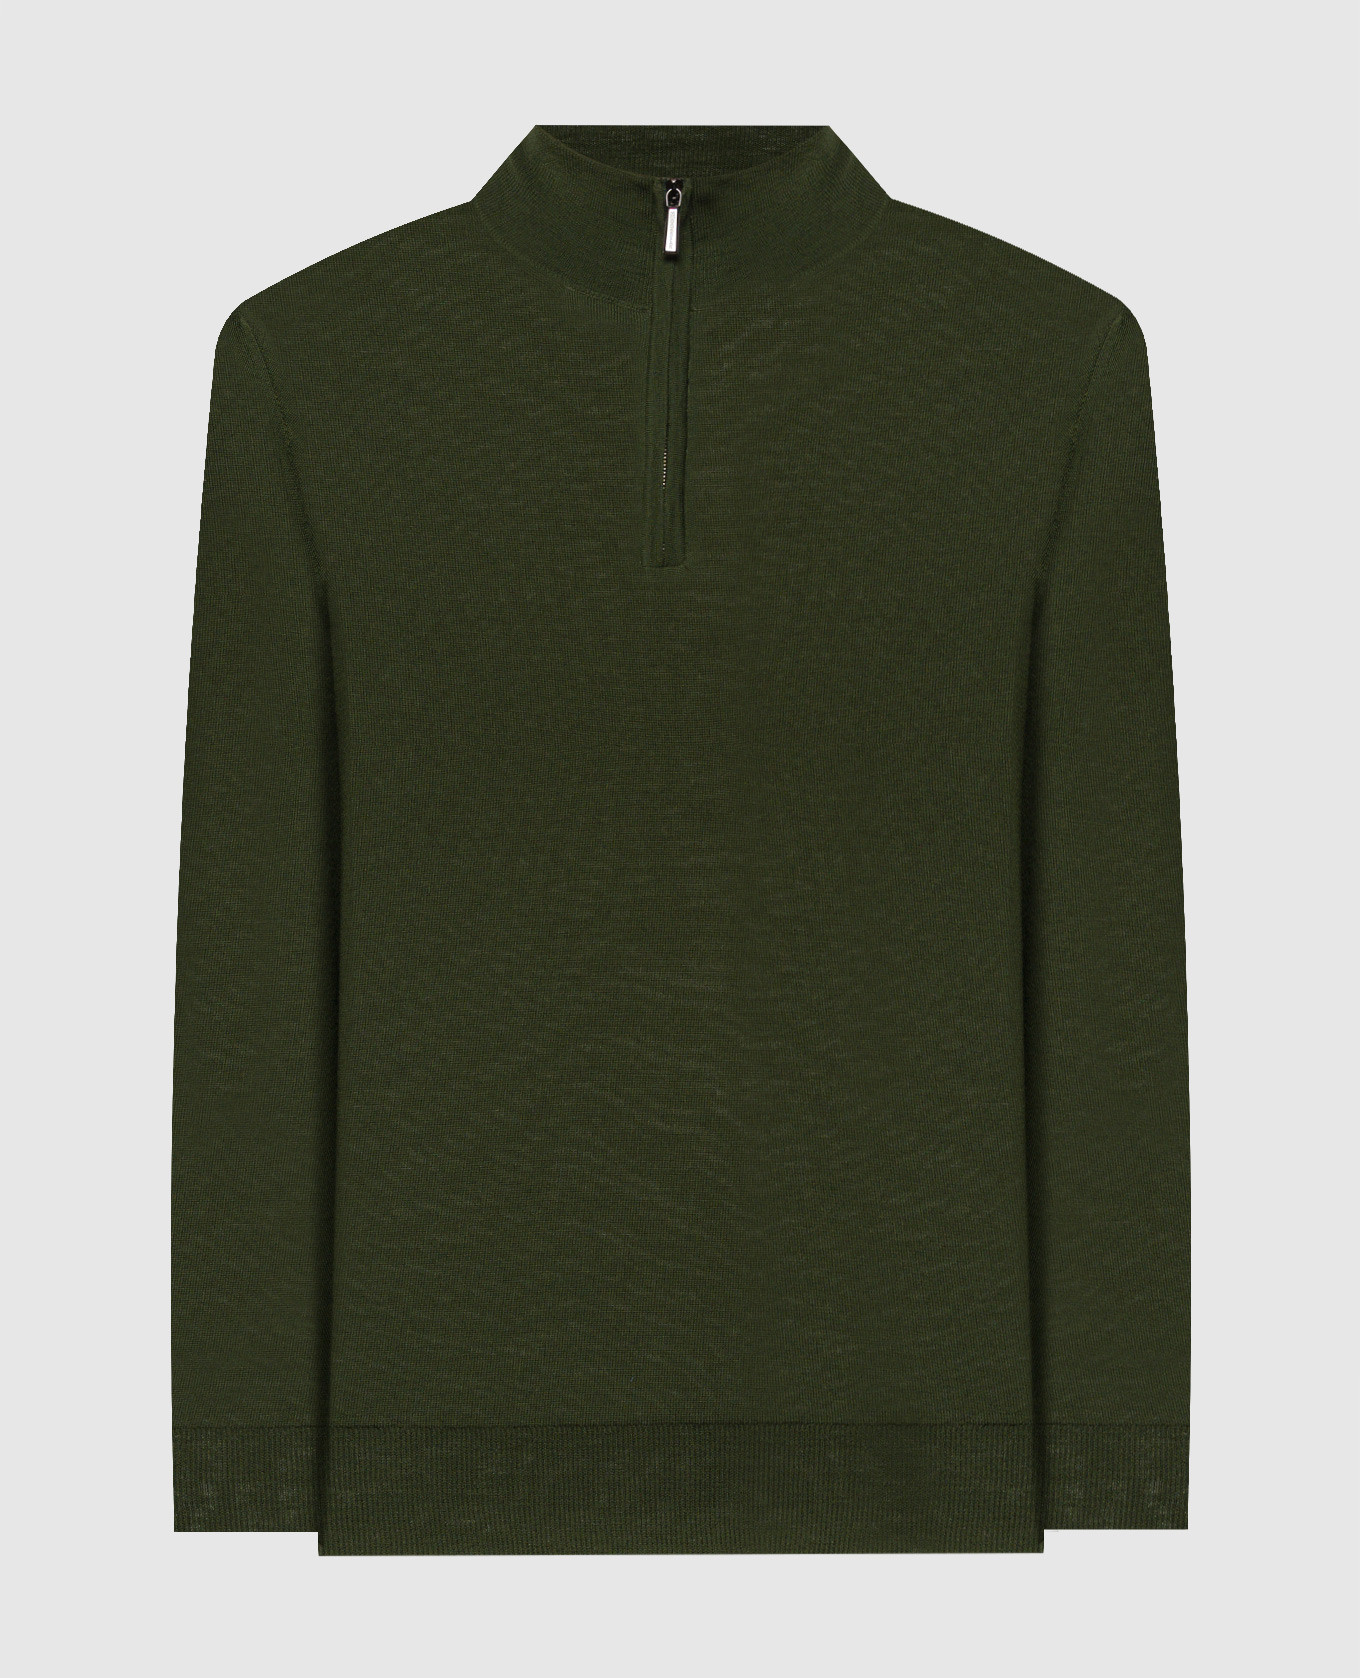 TERNIMLL green wool jumper